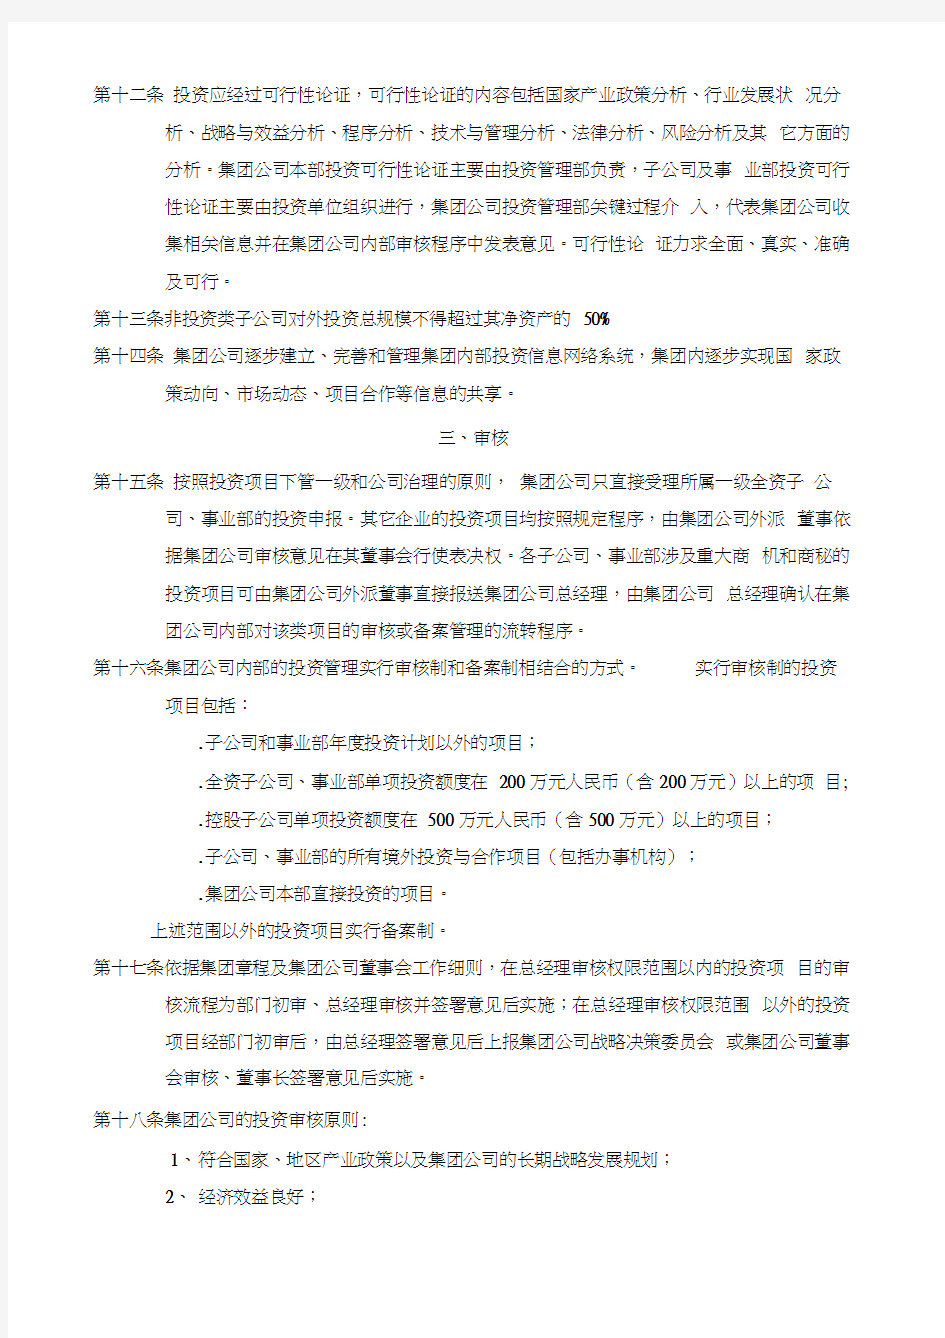 黑龙江辰能集团公司投资管理制度